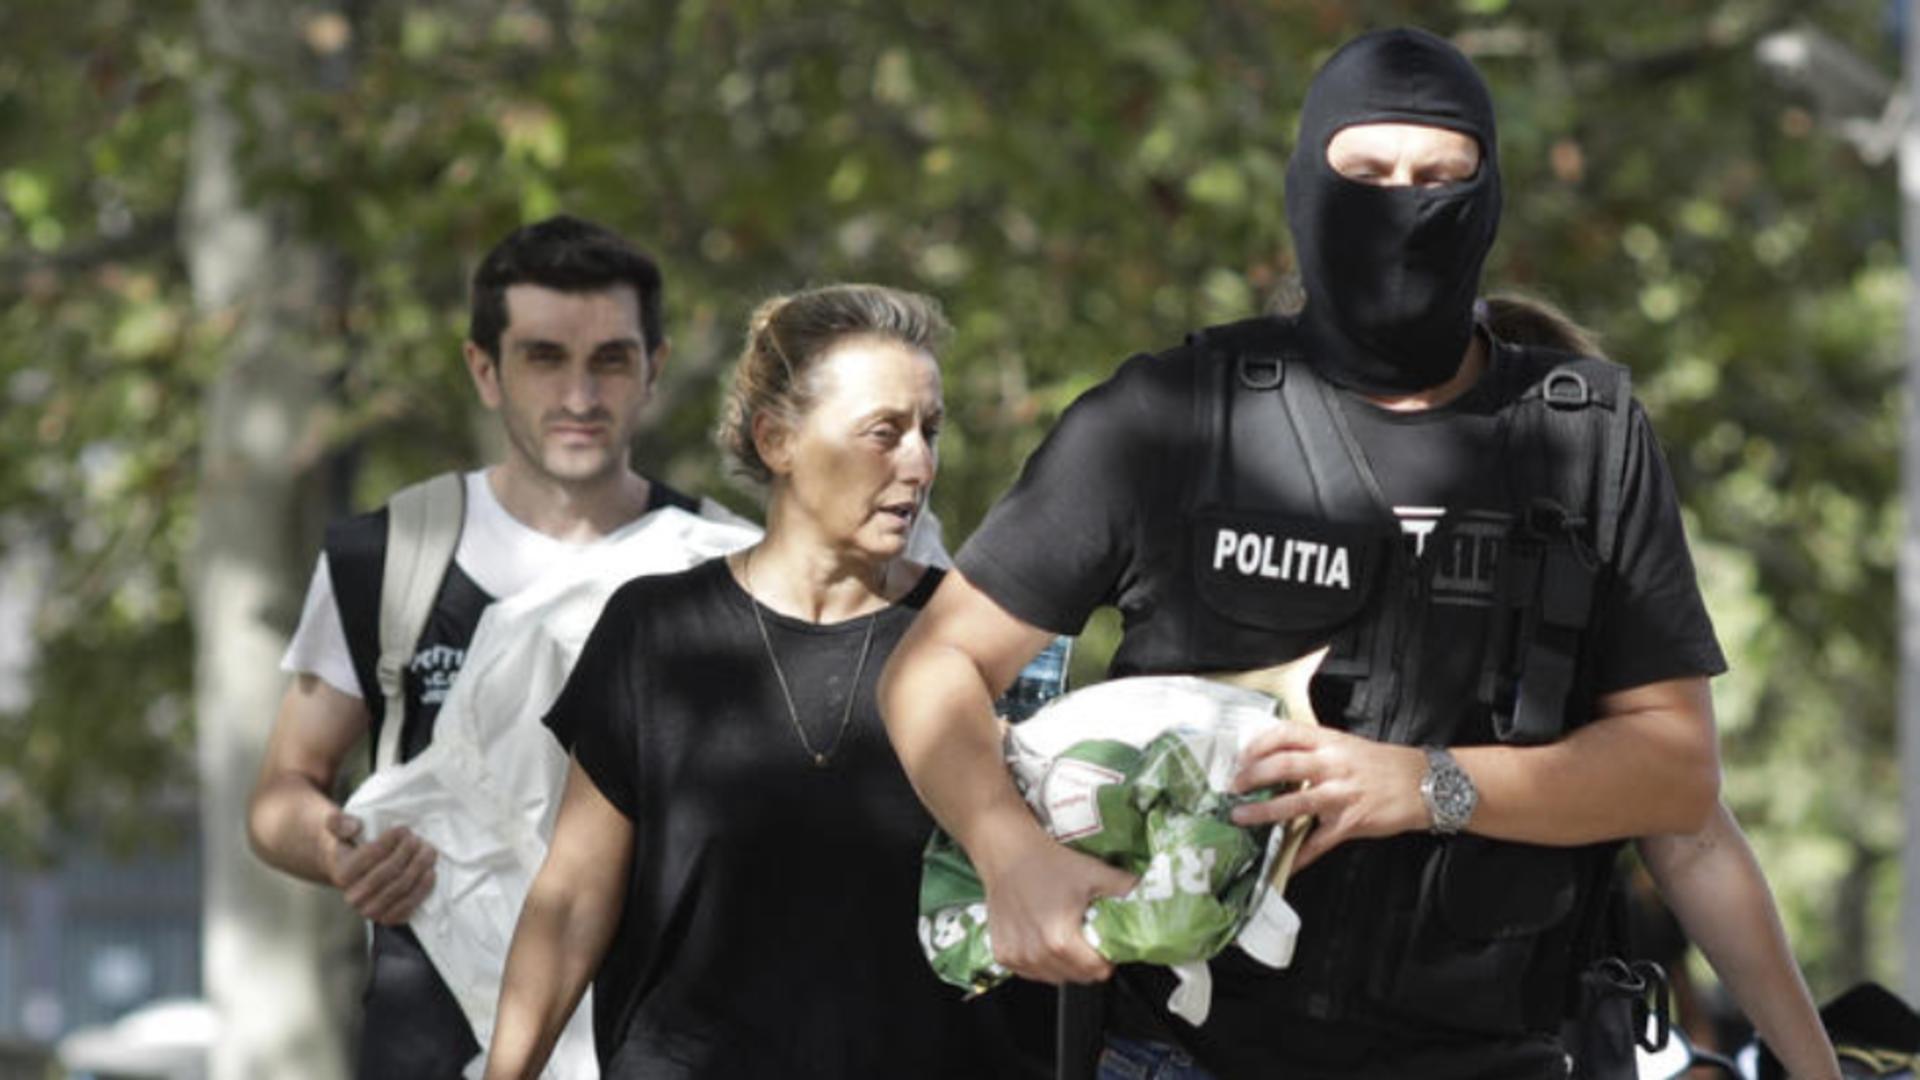 Mama lui Vlad Pascu, despre fosta iubită a drogatului: „E petardă! Va face niște prostii cât ea de mari” – STENOGRAME